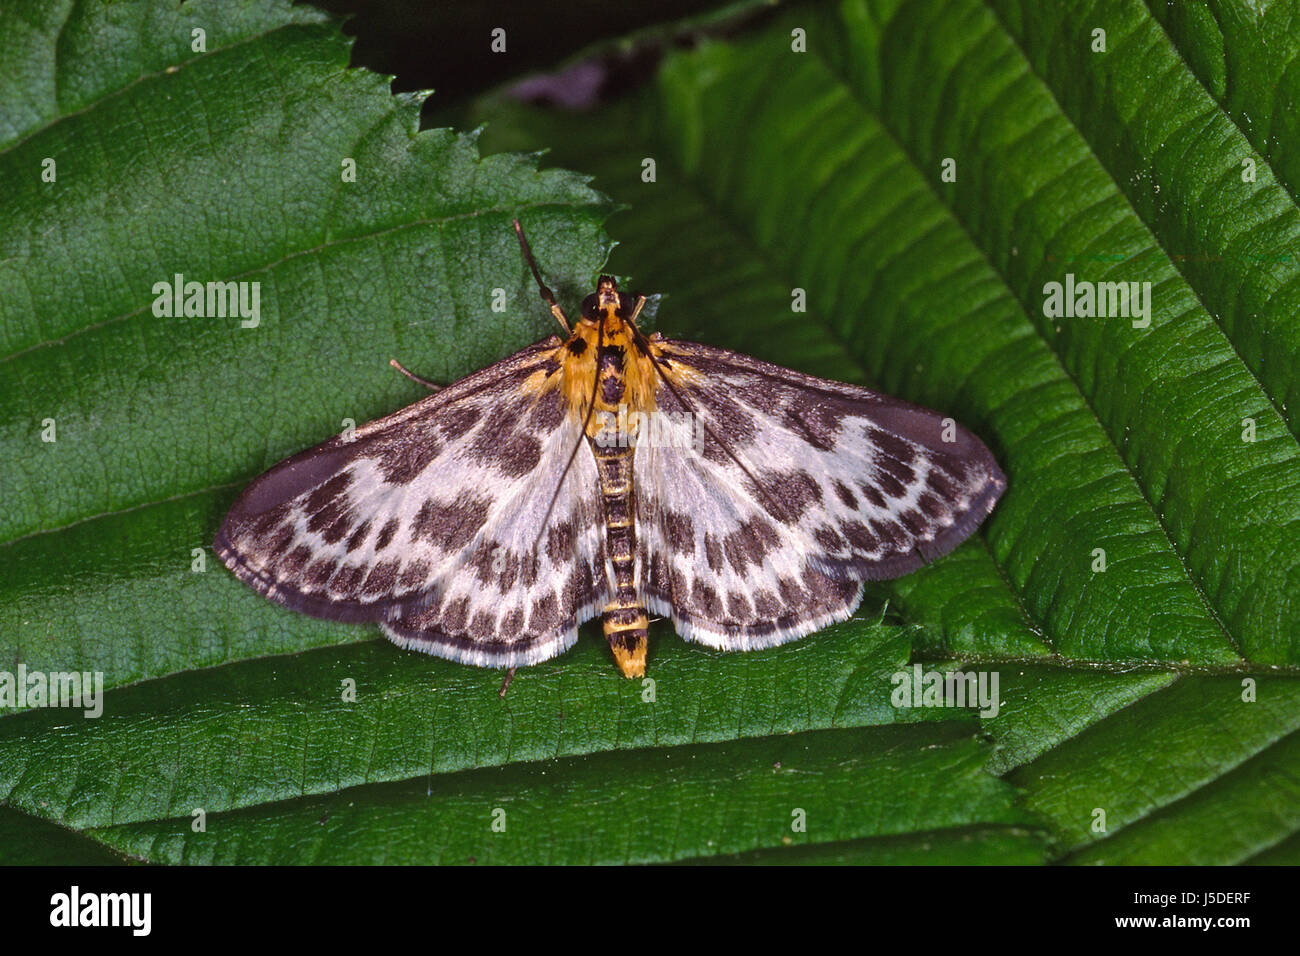 butterfly butterflies moths eurrhypara hortulata eurrhypara urticae Stock Photo